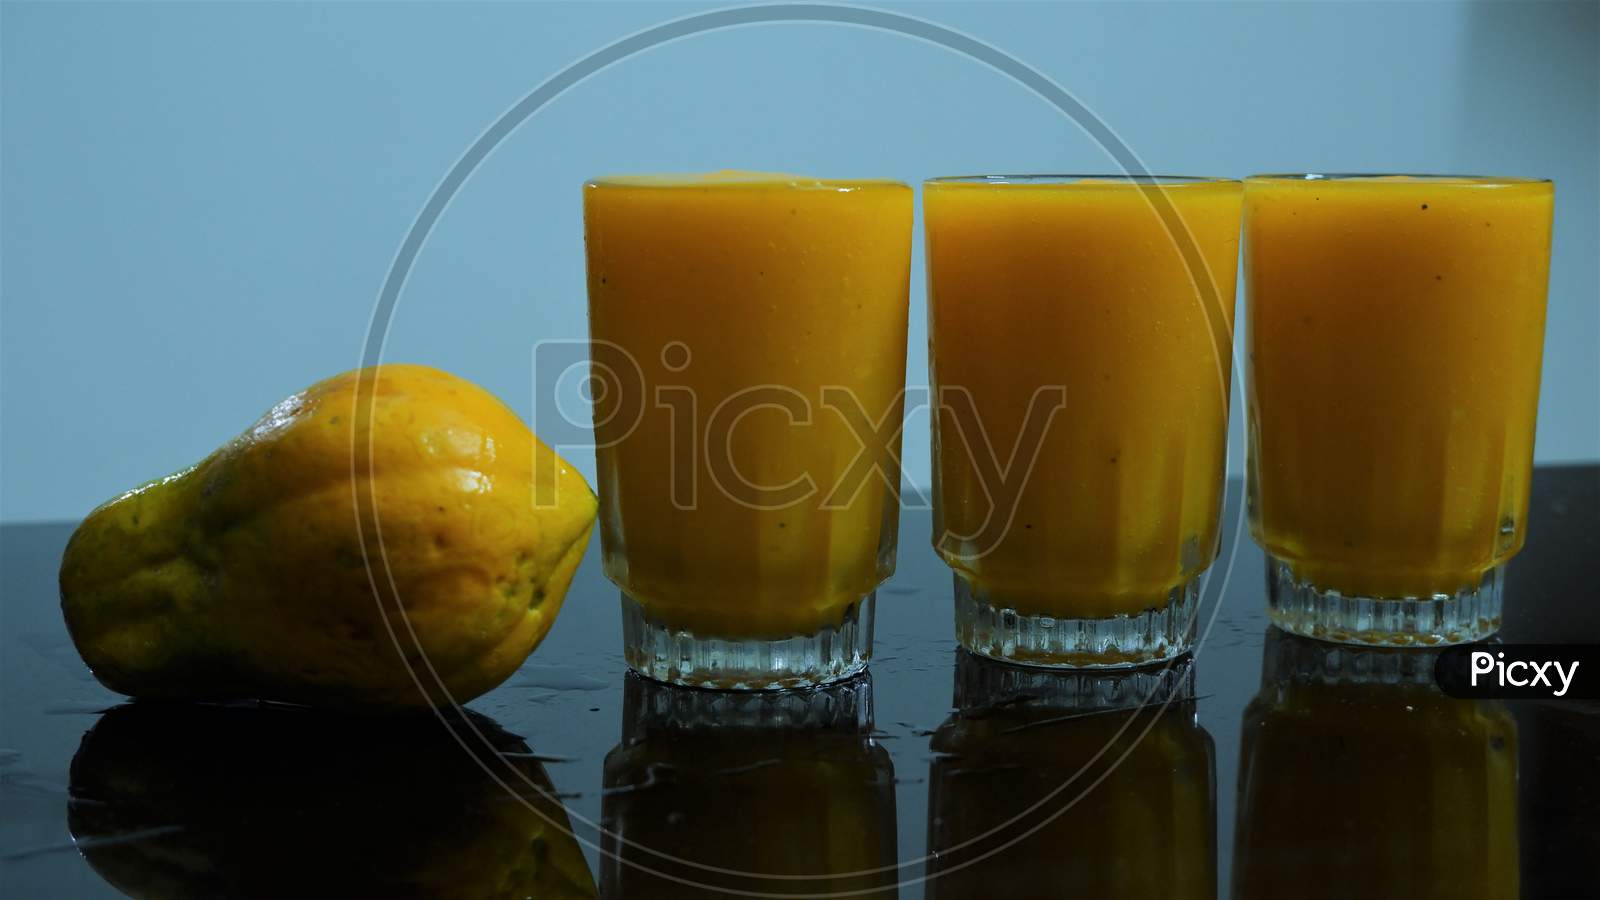 Papaya juice on the glass with papaya